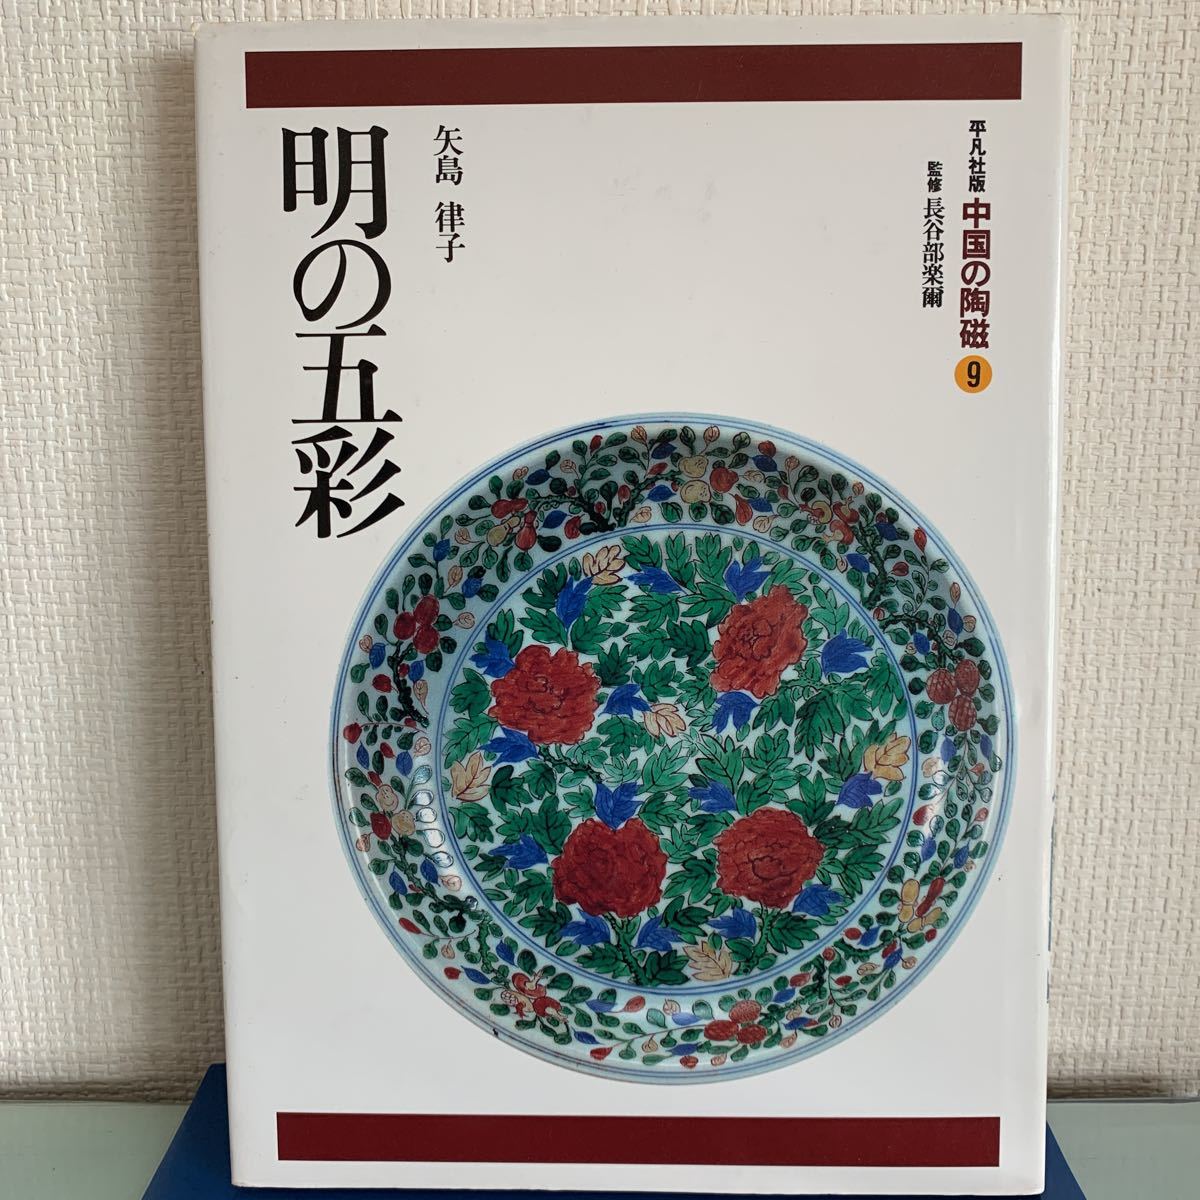 経典 明の五彩 (中国の陶磁９) (著) ハードカバー製本 律子 矢島 1996